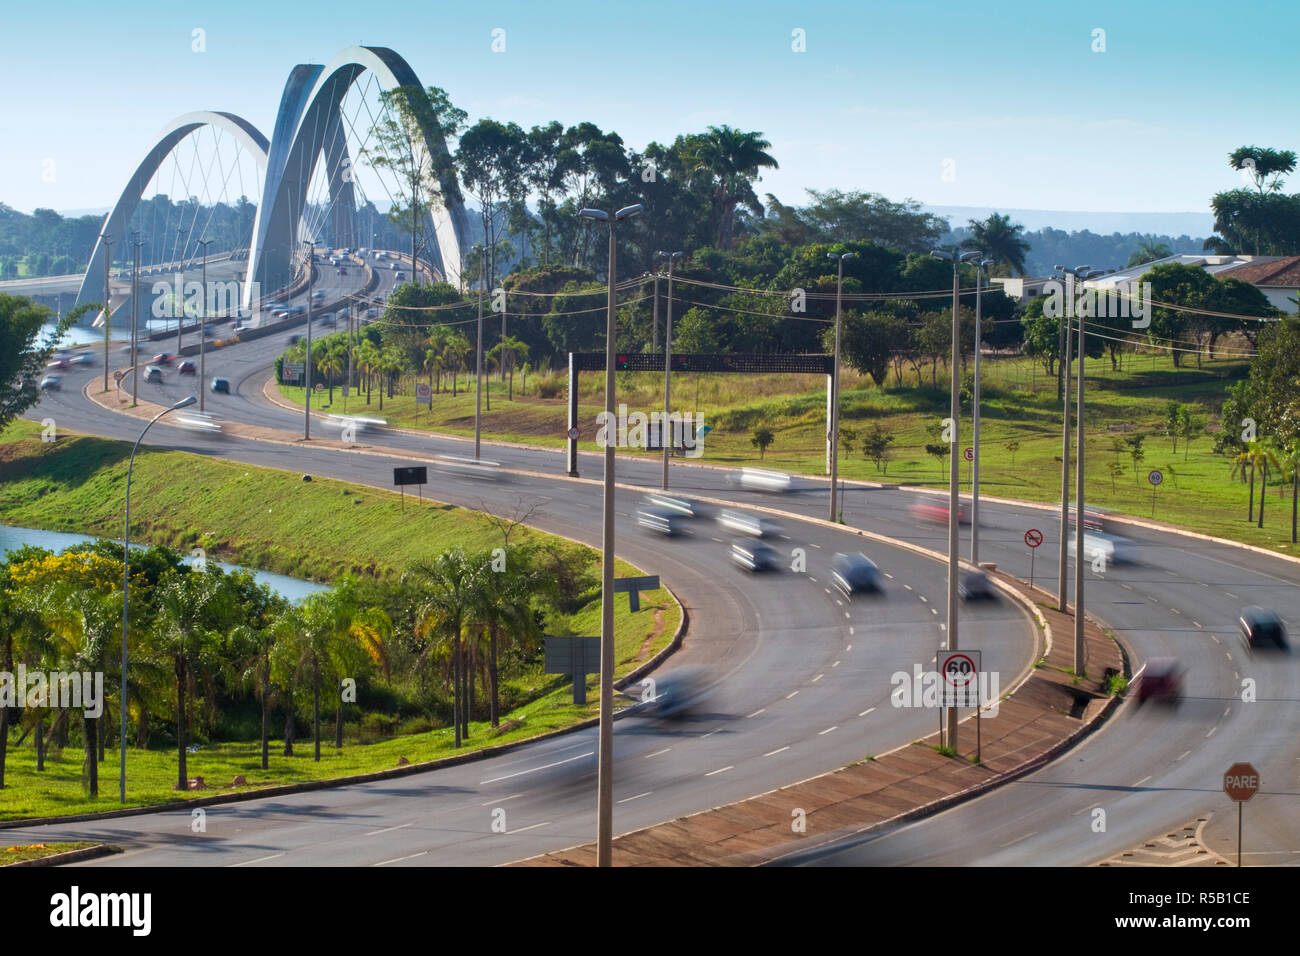 Brazil, Distrito Federal-Brasilia, Brasilia, Lake Paranoa - Lago do Paranoa, Juscelino Kubitschek bridge Stock Photo